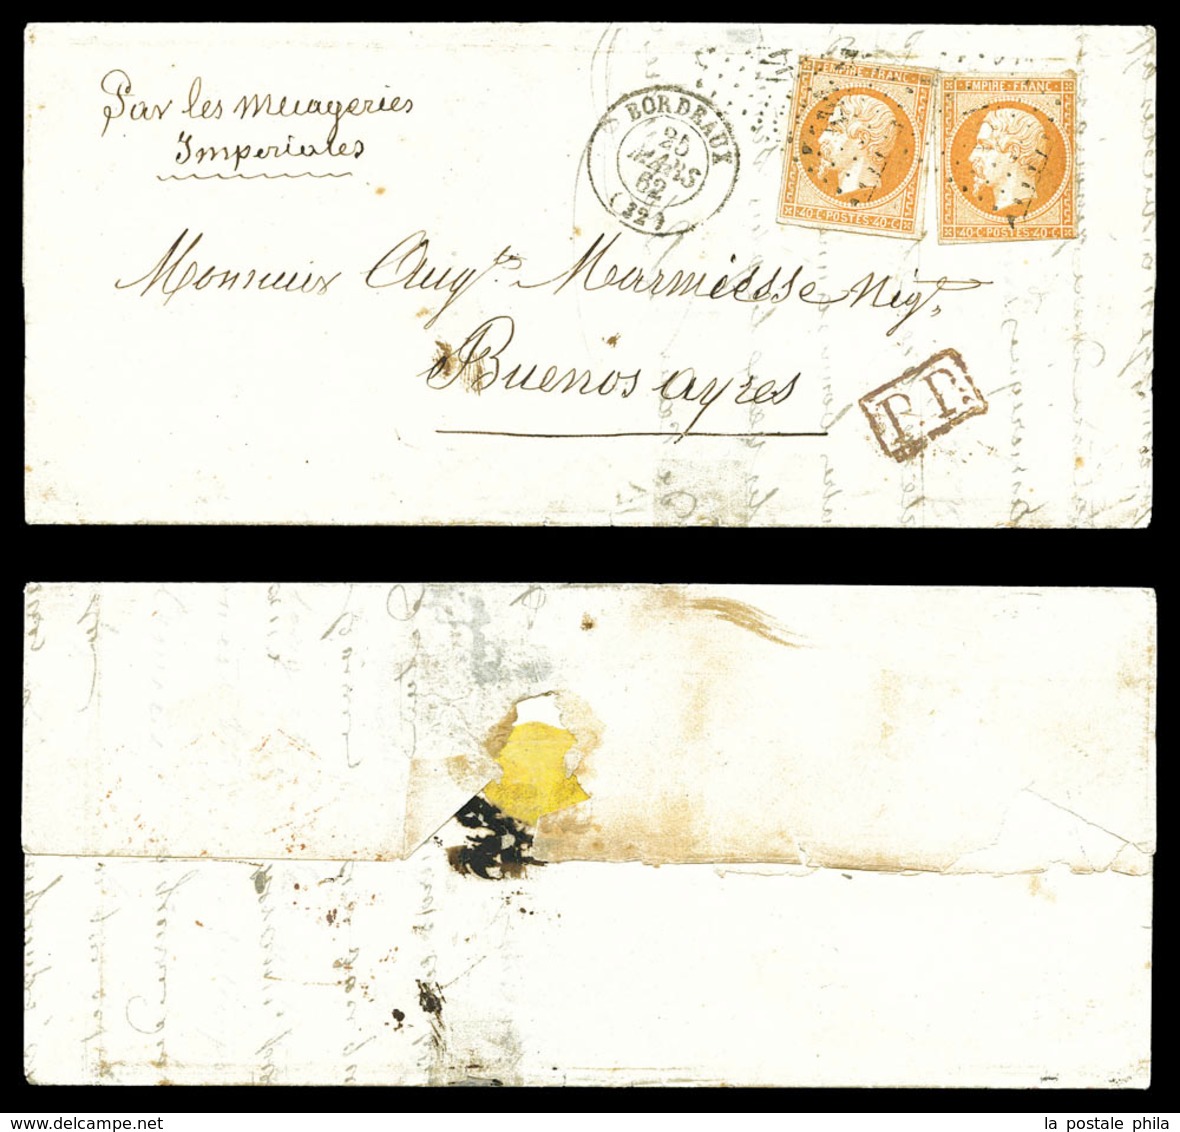 O N°16, 40c Empire, 2 Exemplaires Sur Lettre De Bordeaux Le 25 Mars 1862 Pour BUENOS AYRES. (certificat)  Qualité: O - 1849-1876: Classic Period